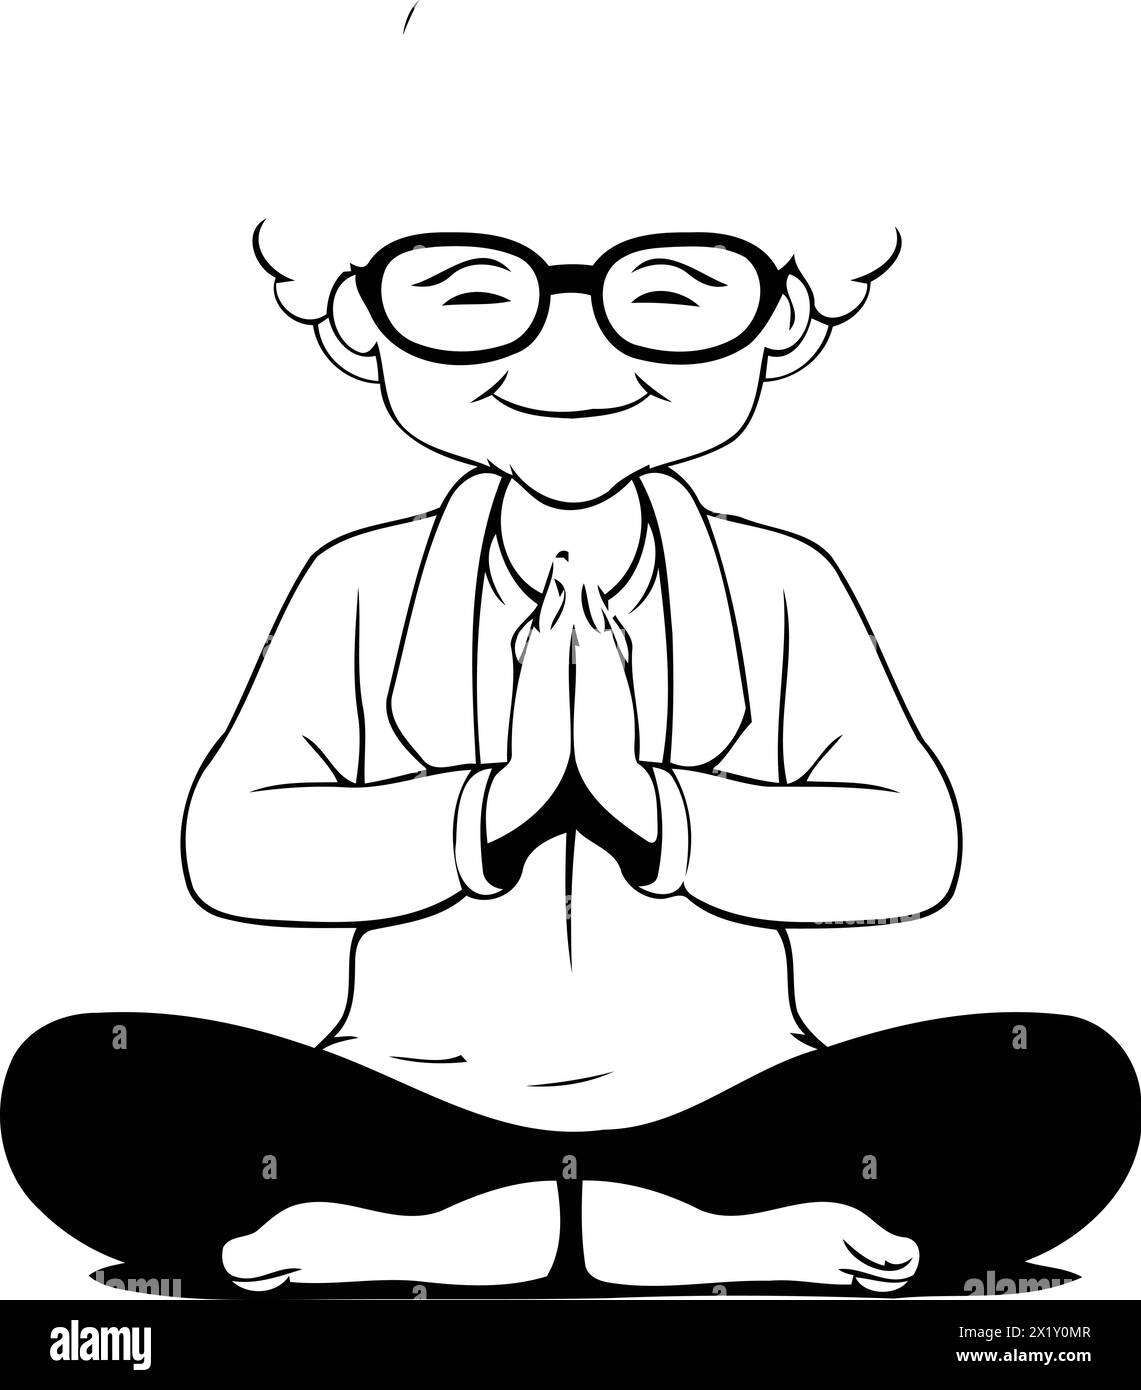 Grandmother meditating in lotus position. Vector cartoon illustration. Stock Vector